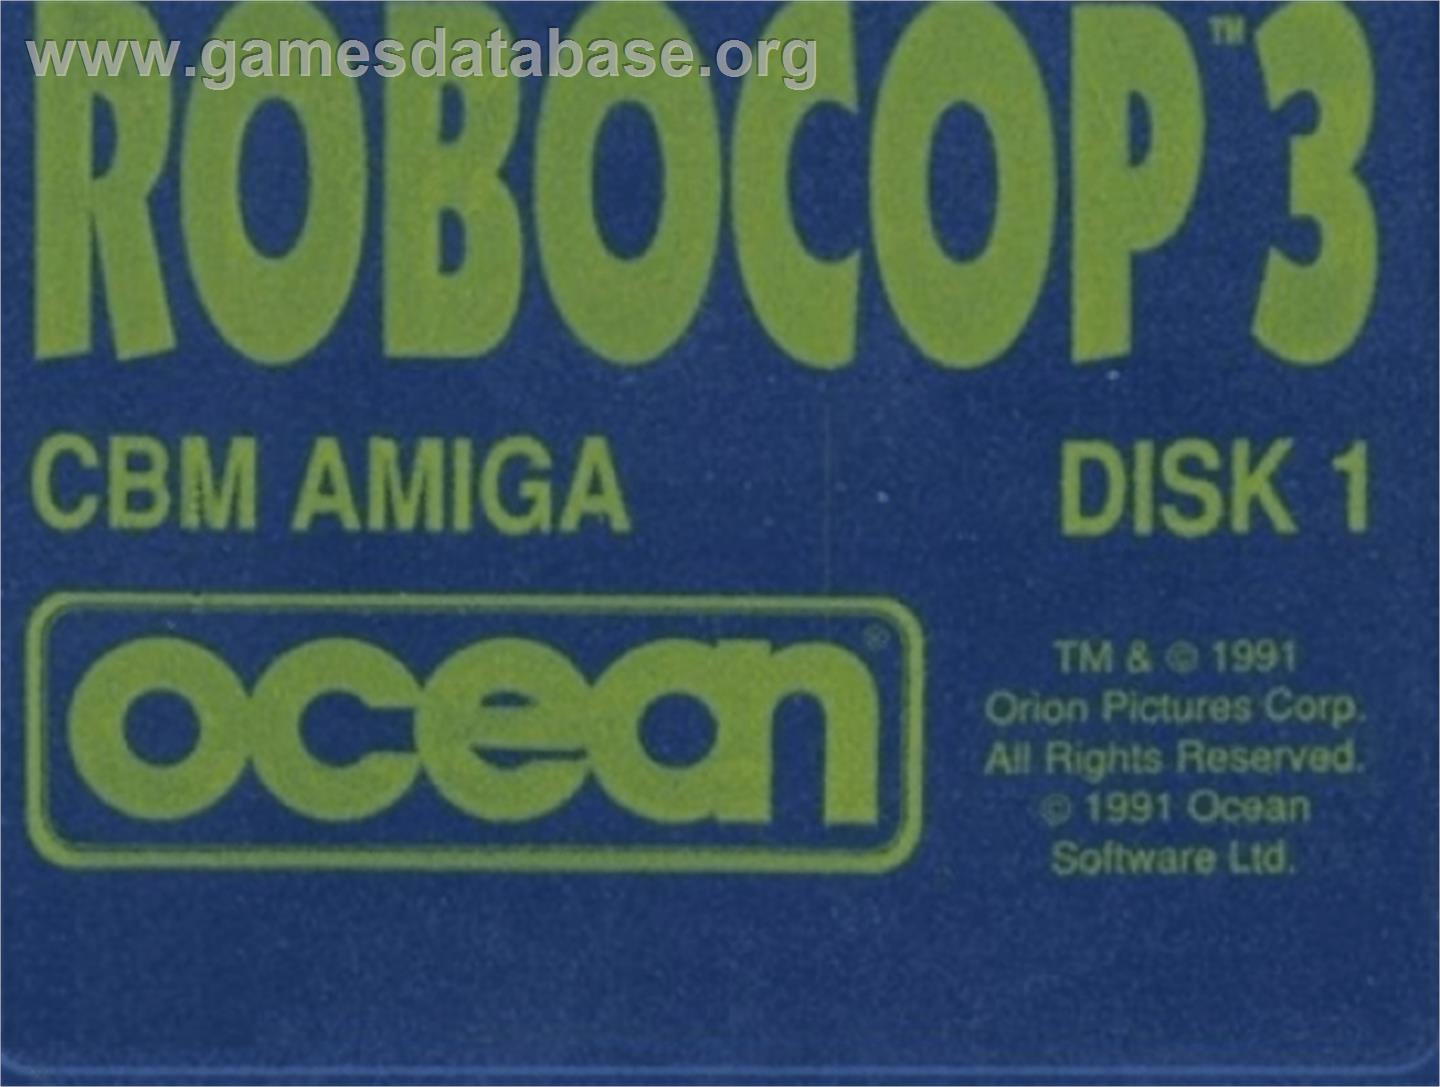 Robocop 3 - Commodore Amiga - Artwork - Cartridge Top